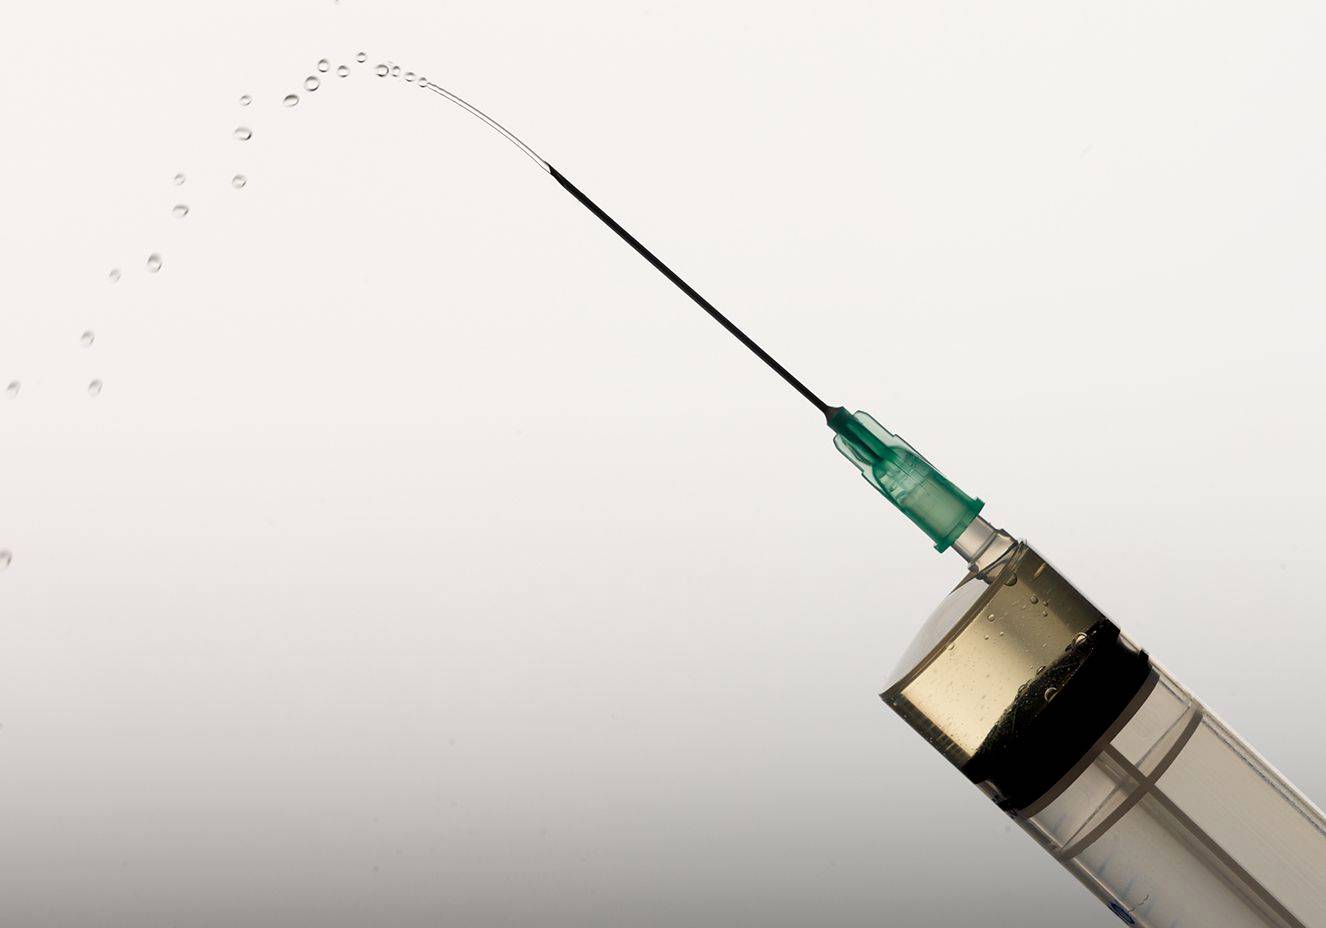 Cuba testará em humanos sua vacina contra Covid-19